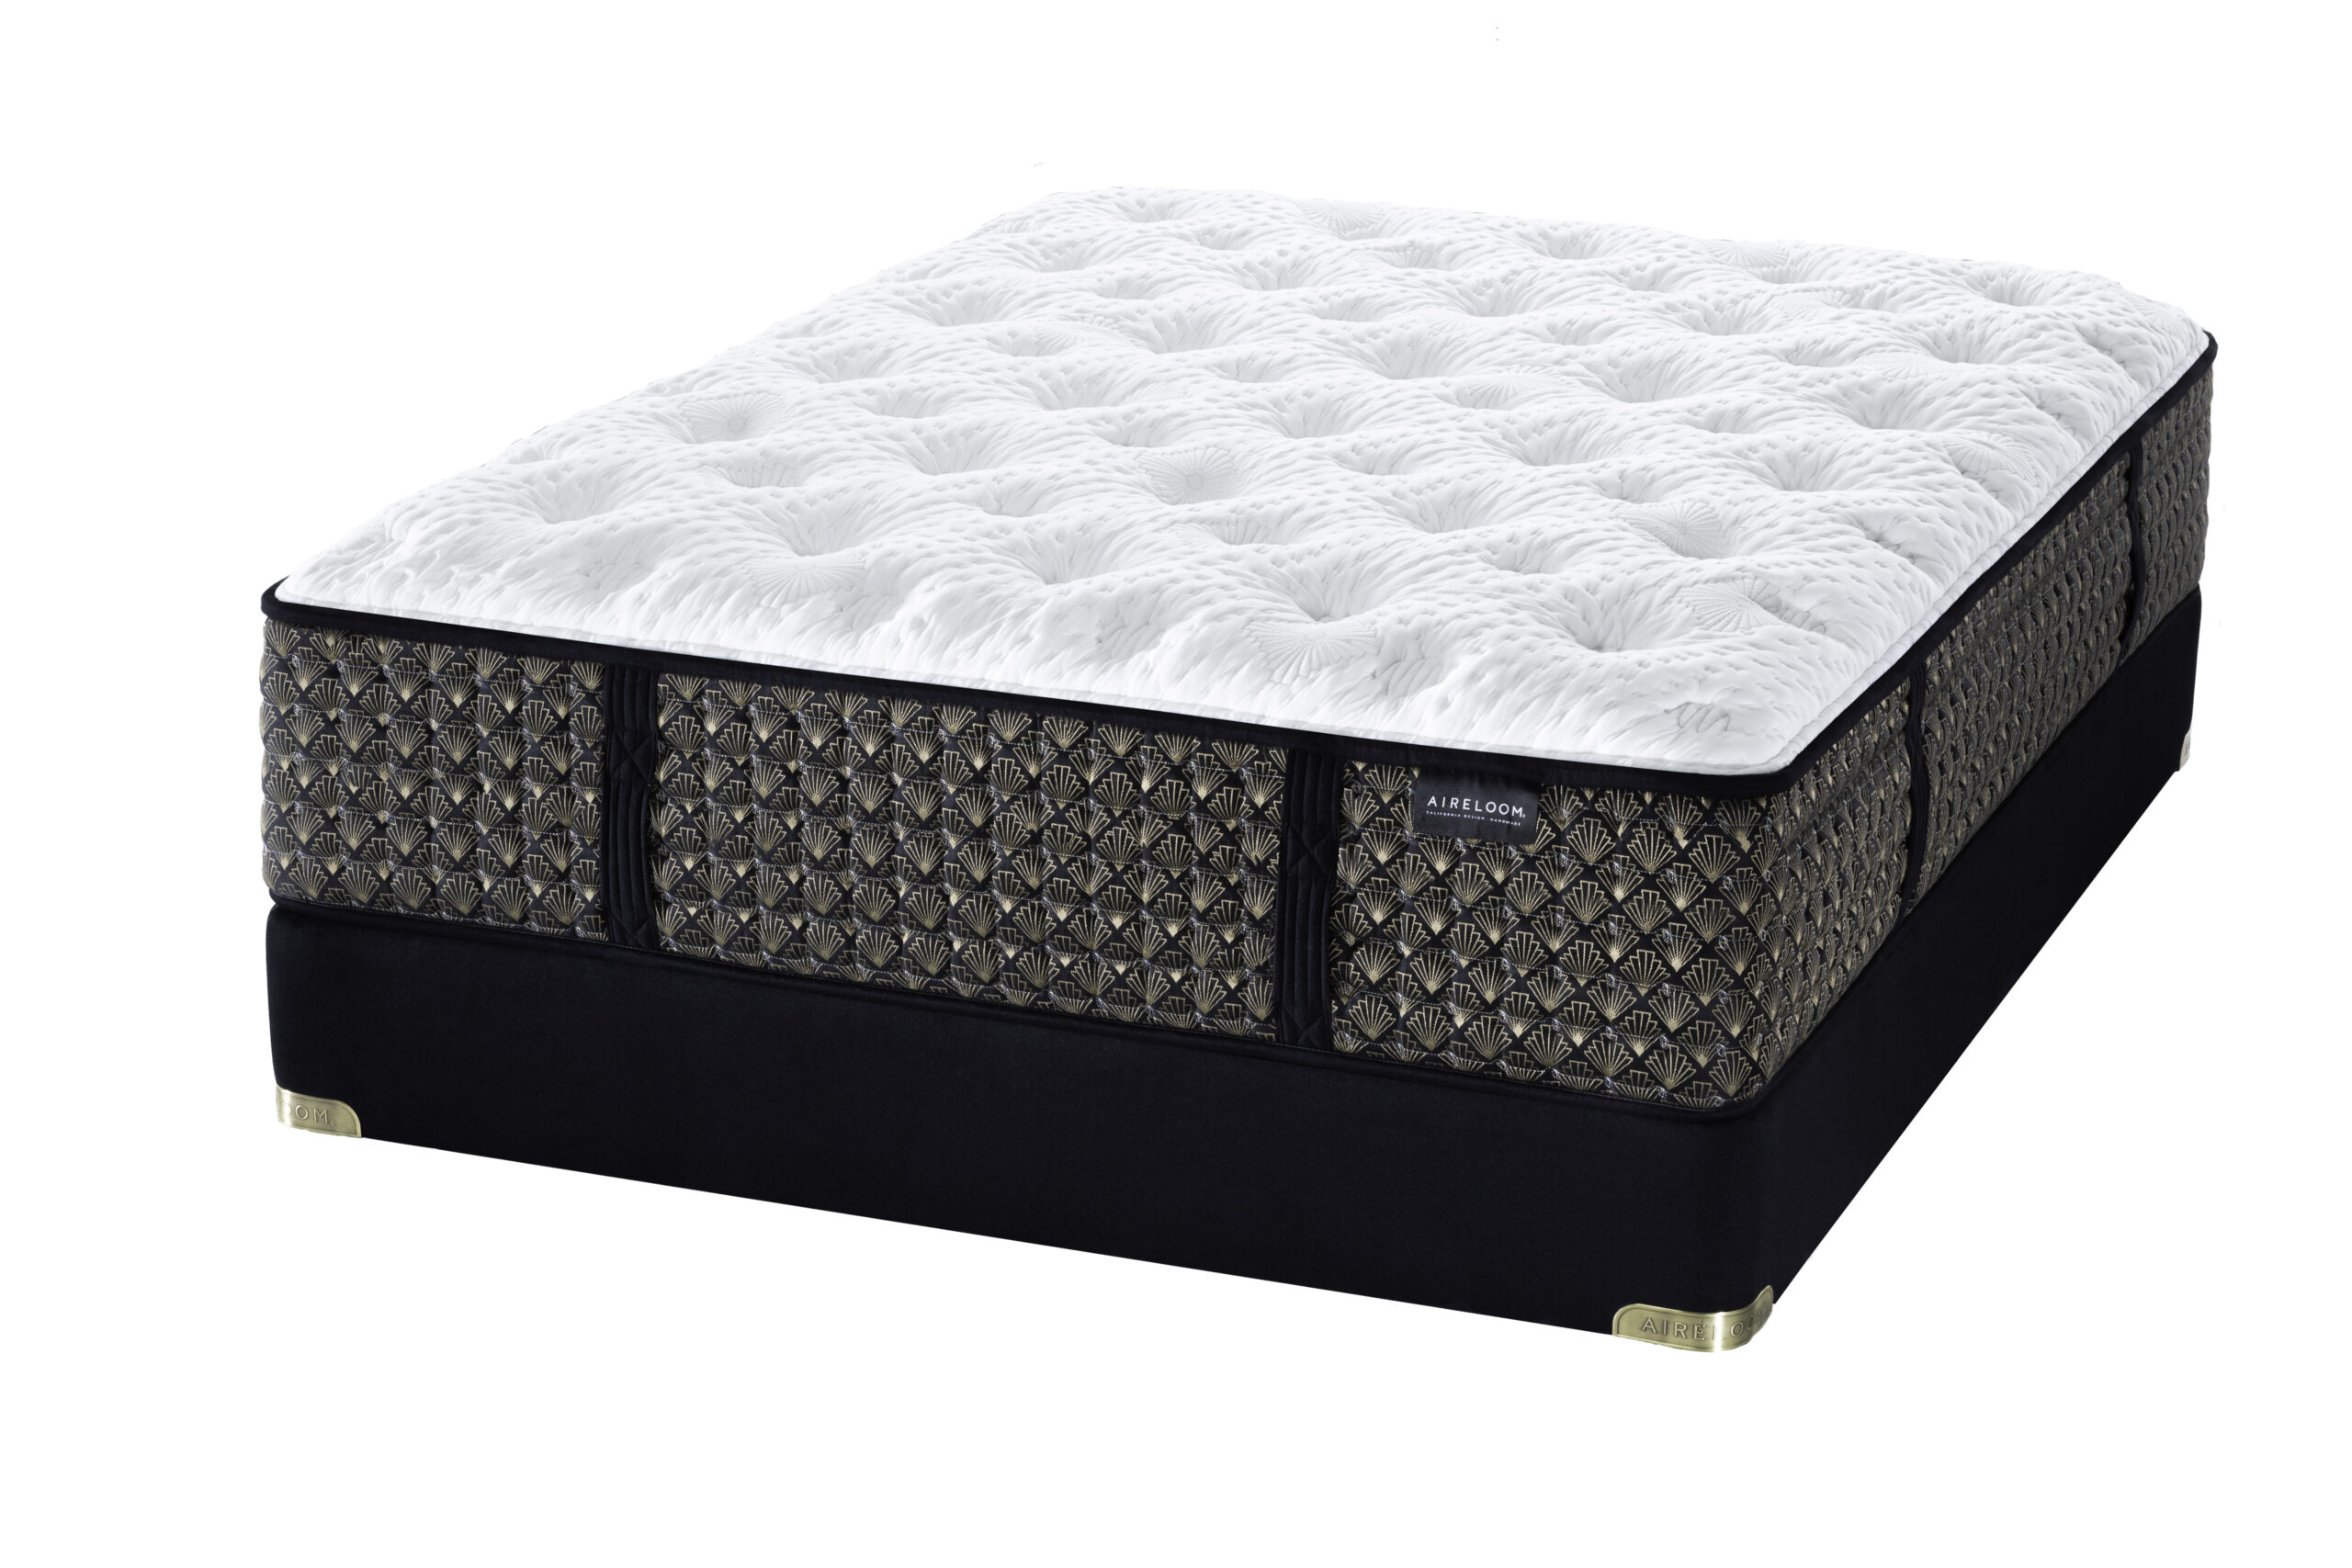 blakefield luxury plush mattress king big lots